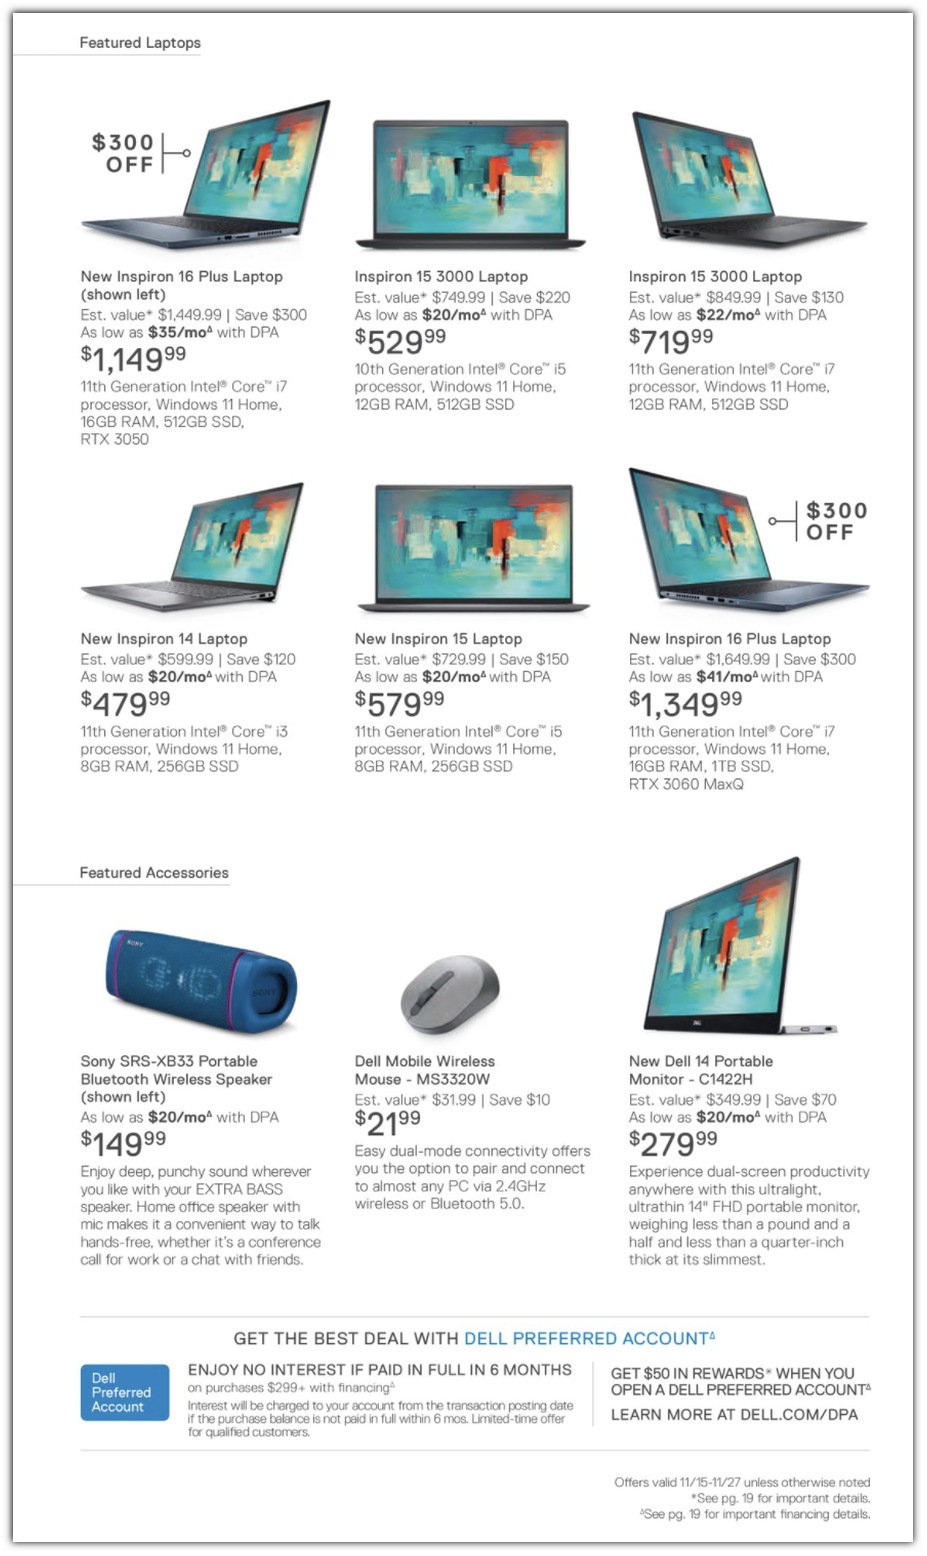 Laptops / Speaker / Mouse